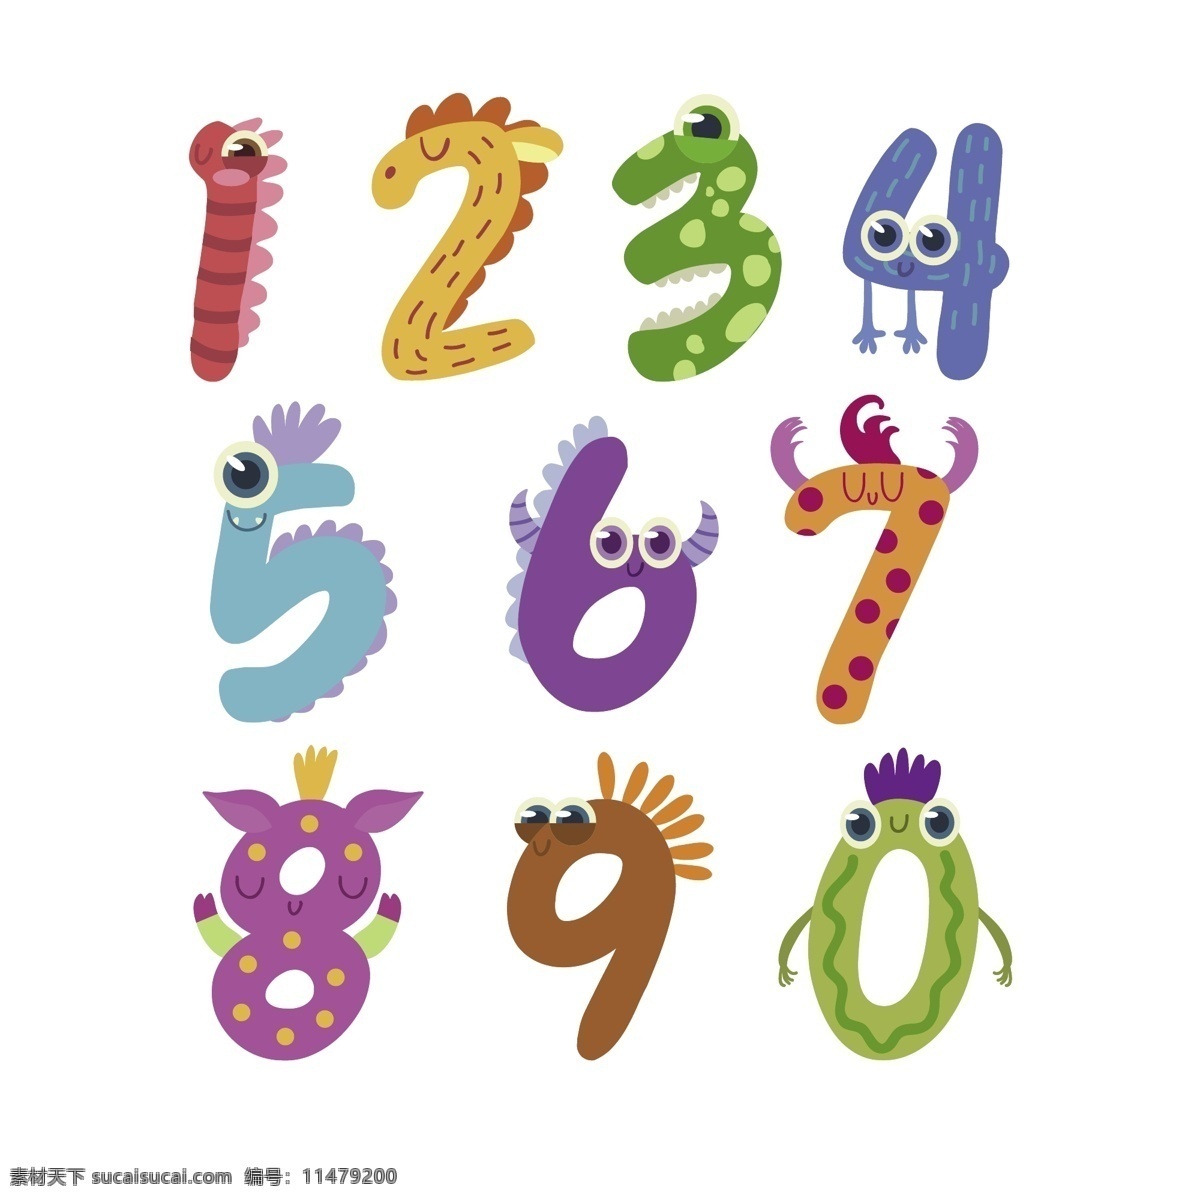 多种 虫 类 数字 元素 数字元素 数字素材 数字阿拉伯 数字设计 可爱数字 虫类数字